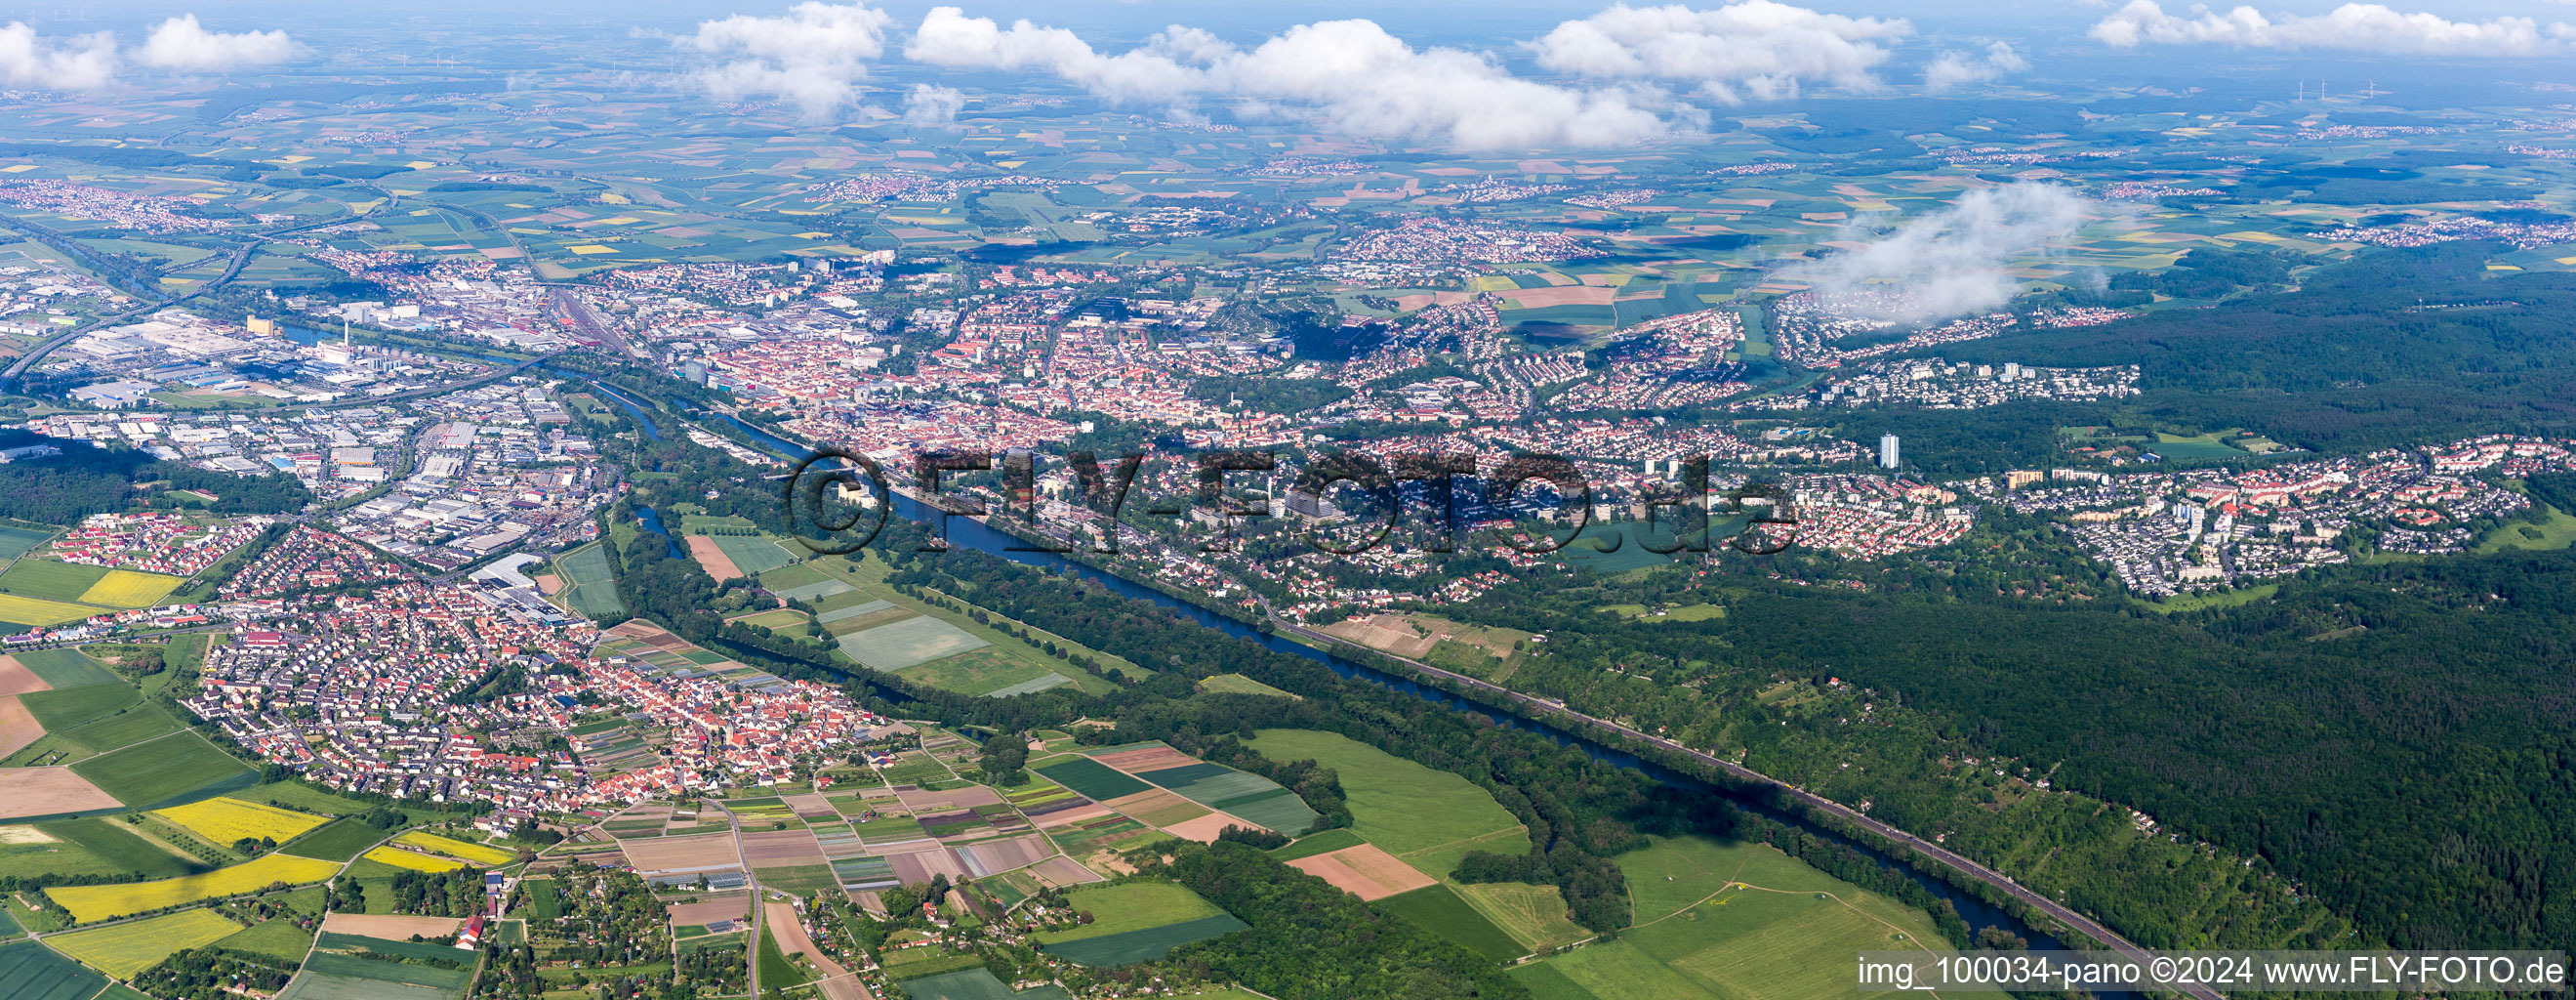 Luftbild von Stadtansicht am Ufer des Flußverlaufes des Main zwischen Sennfeld und Schweinfurt im Bundesland Bayern, Deutschland